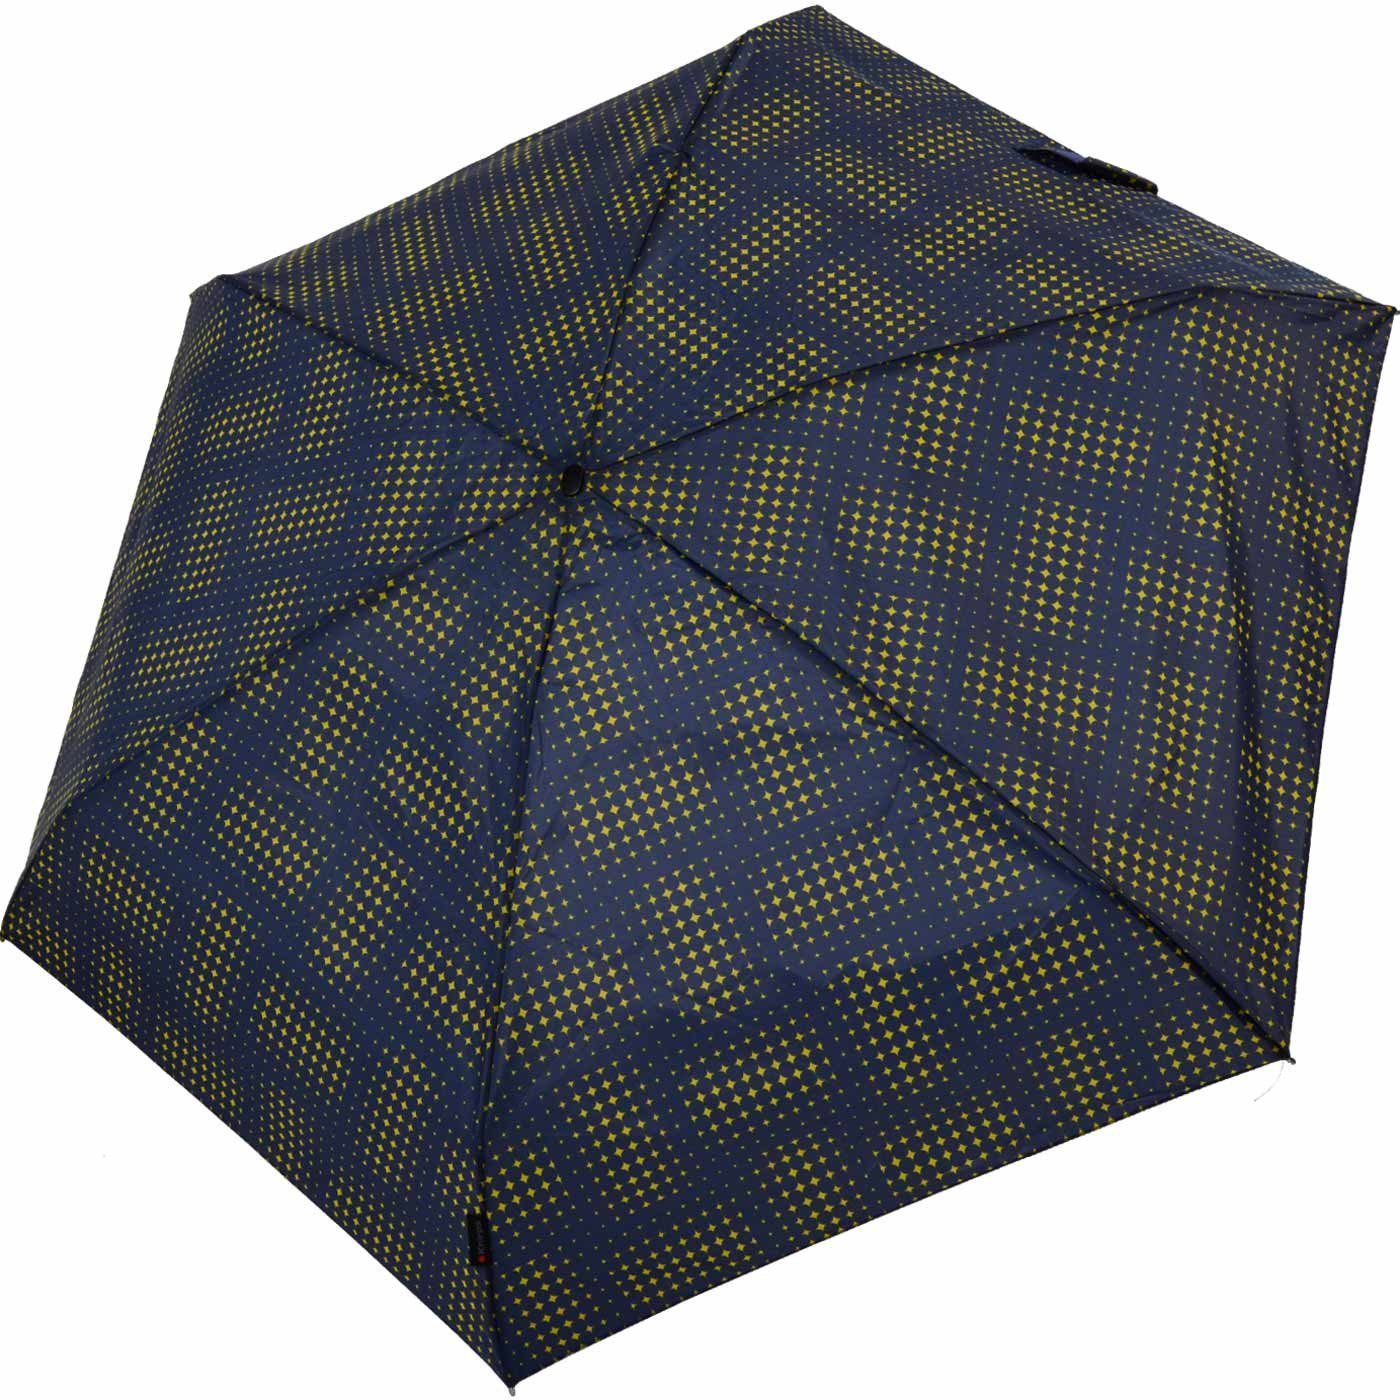 der zuverlässige Taschenregenschirm jede klein navy-blau-gelb stars, Travel in Mini-Schirm Knirps® der leicht Begleiter, kompakt passt Tasche -